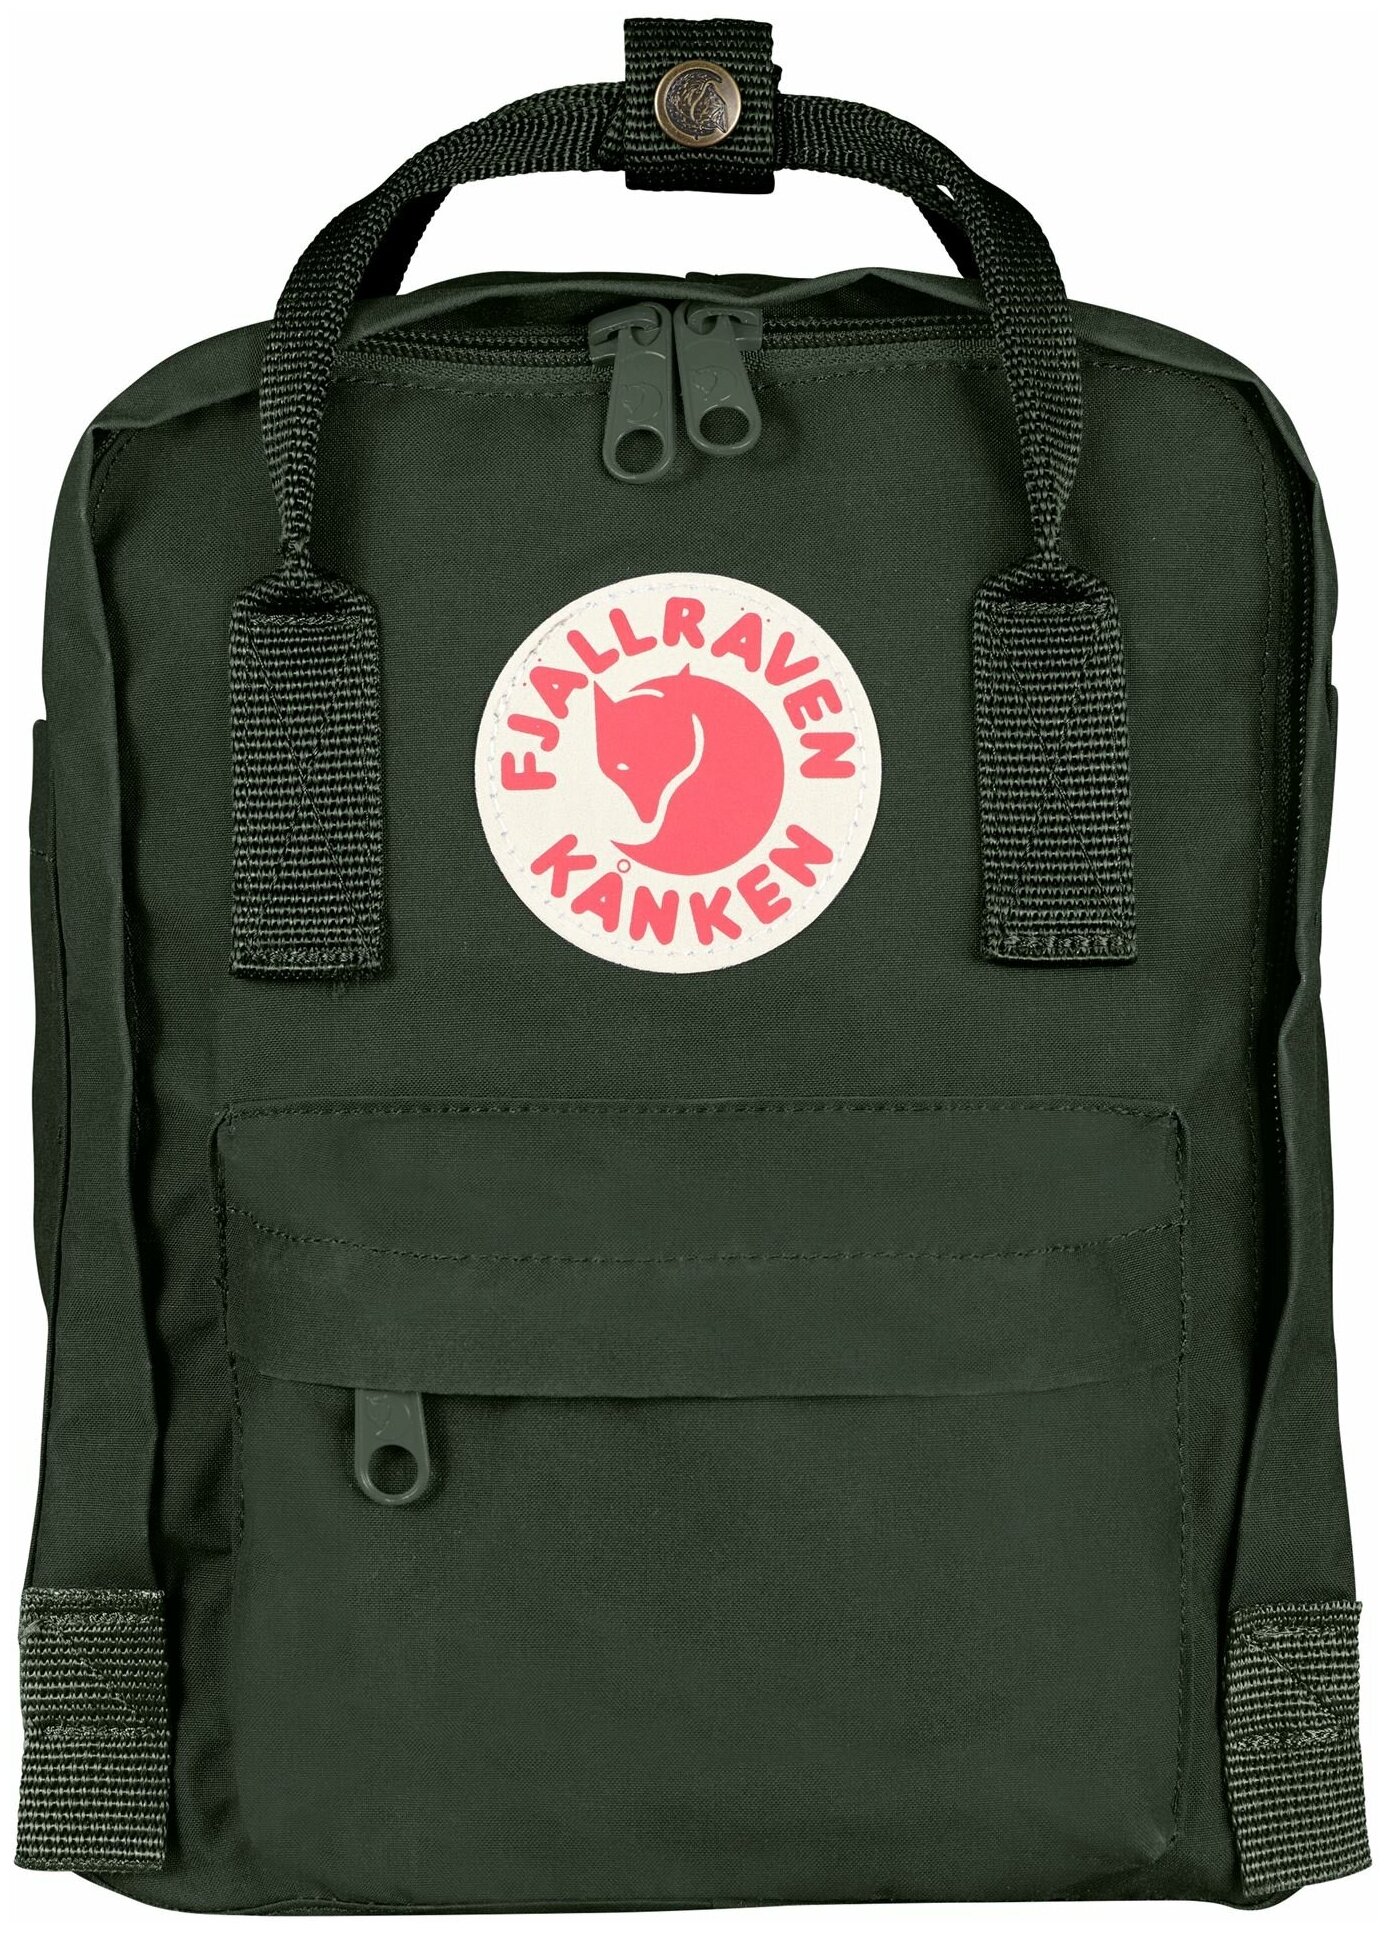 Рюкзак Fjallraven Kanken Mini, темно-зеленый, 20х13х29 см, 7 л